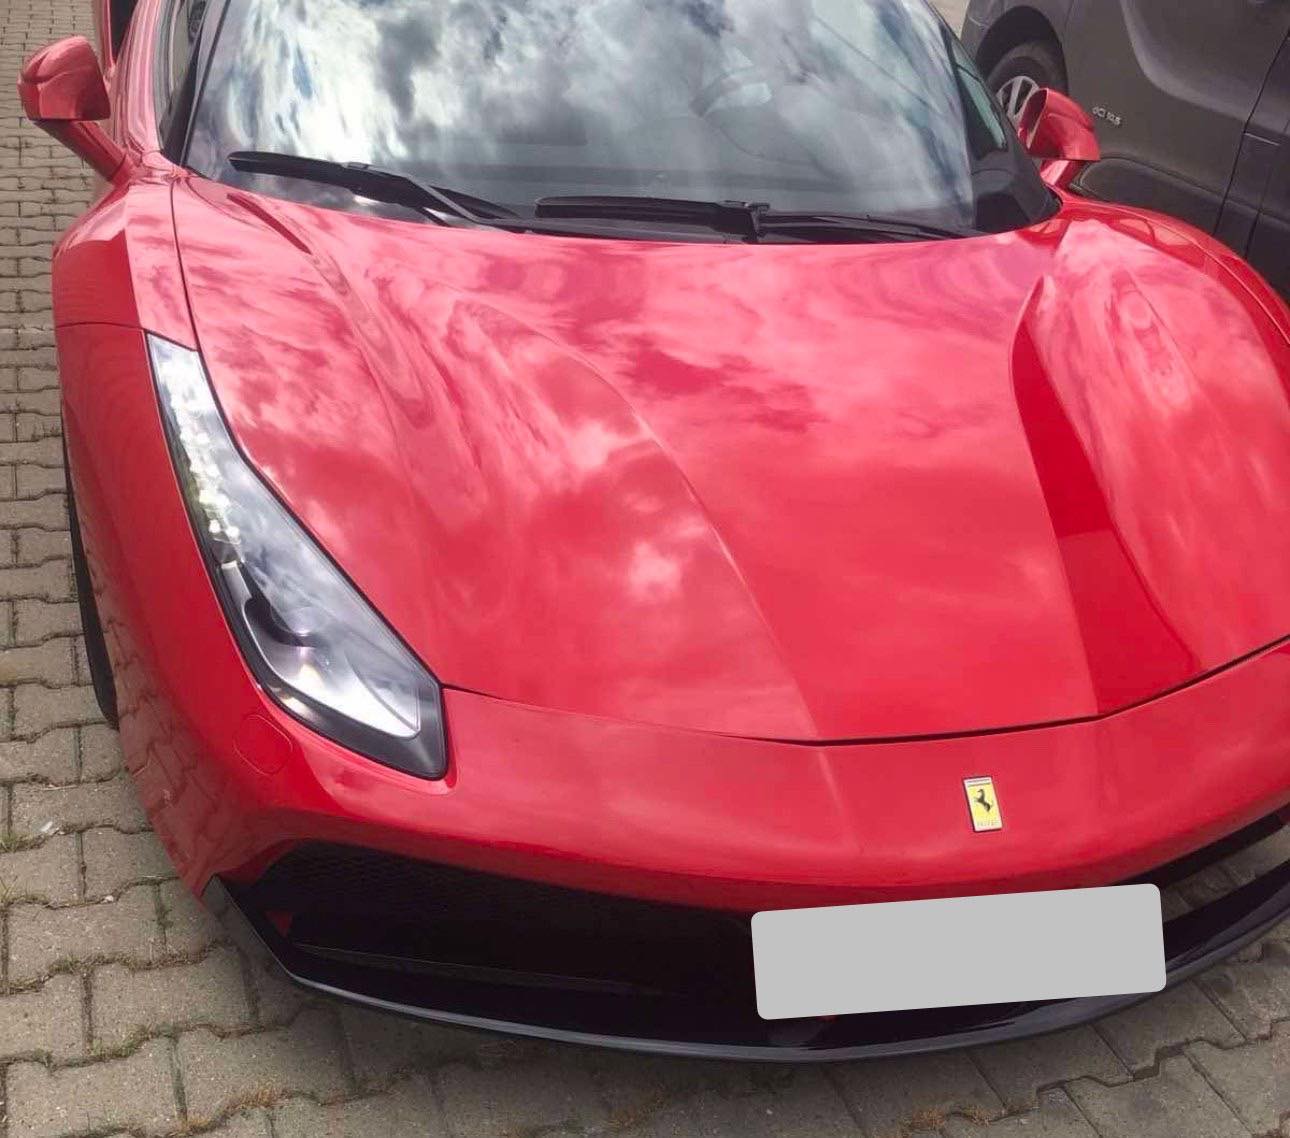 Dogana e konfiskon një Ferrari në vlerë prej 250 mijë eurosh